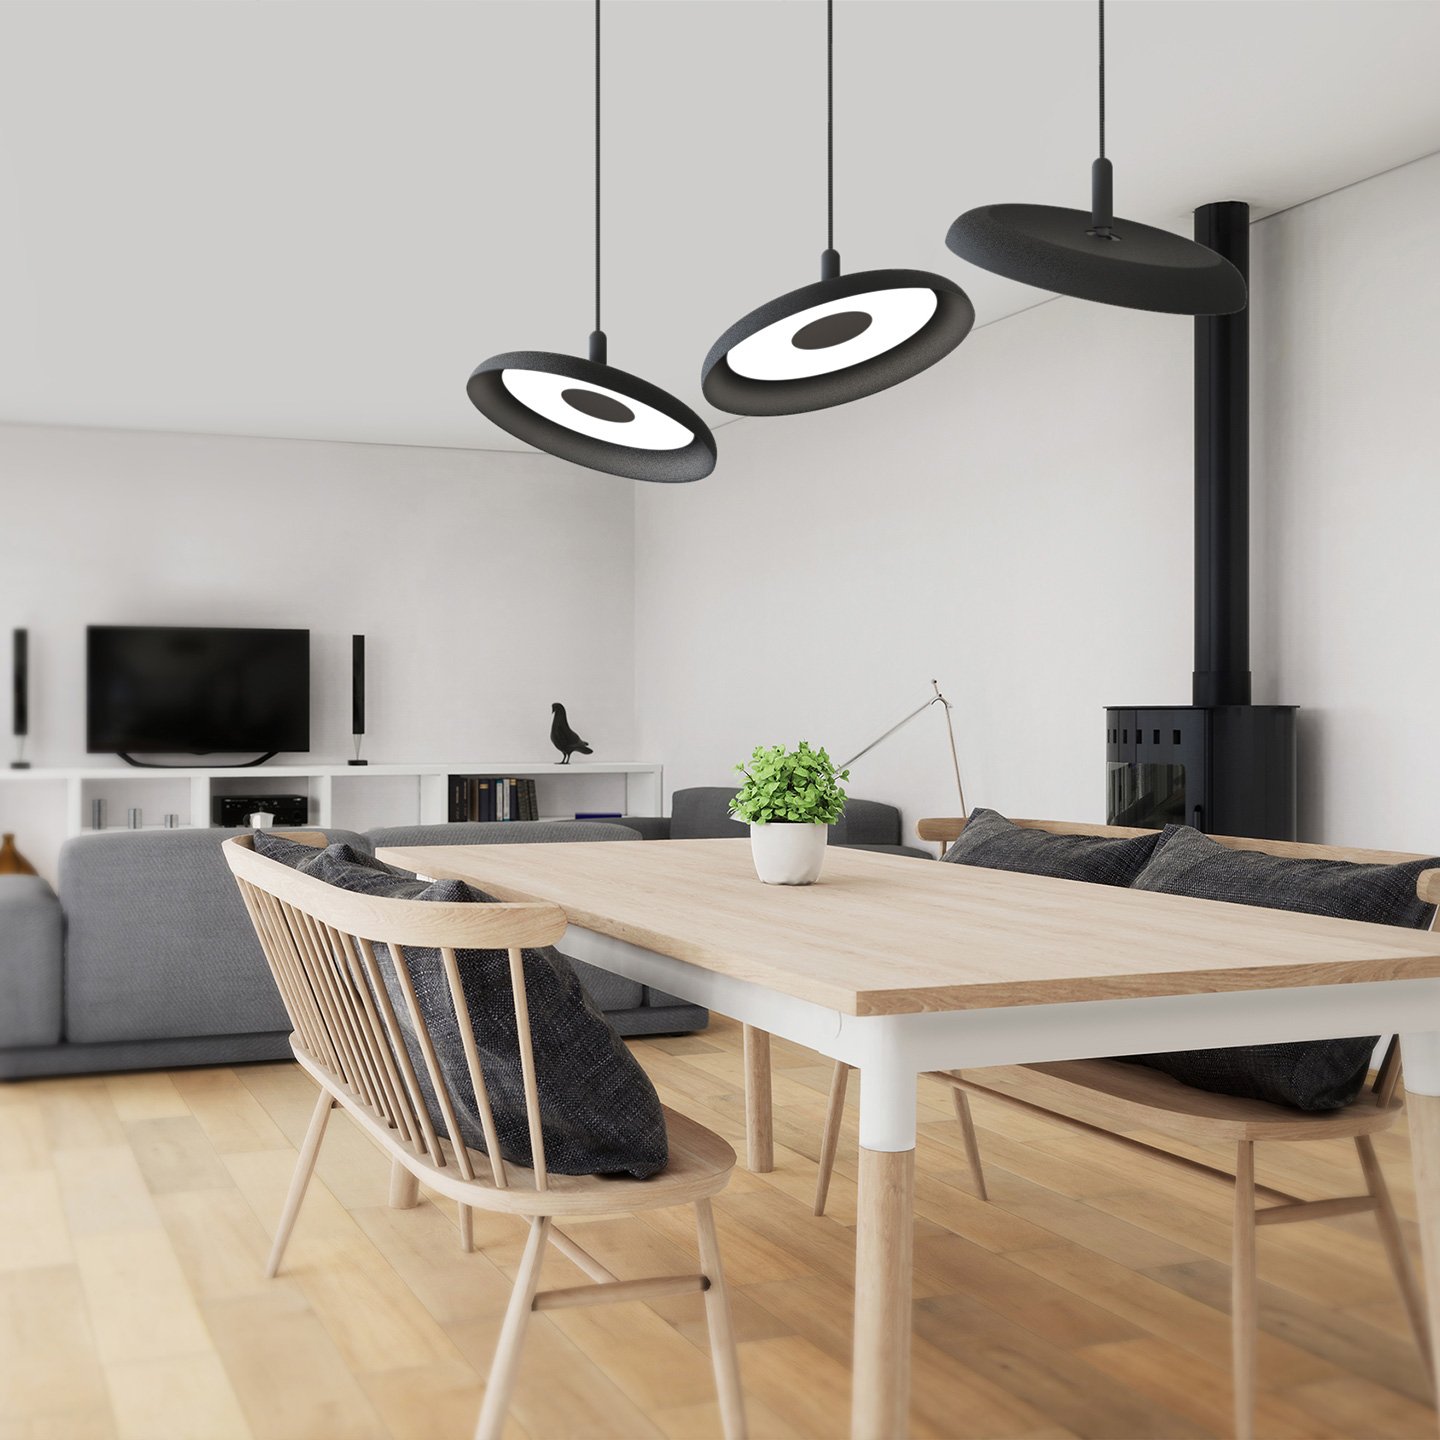 Nivél est un système d'éclairage LED qui permet de contrôler la lumière dans tous les espaces.